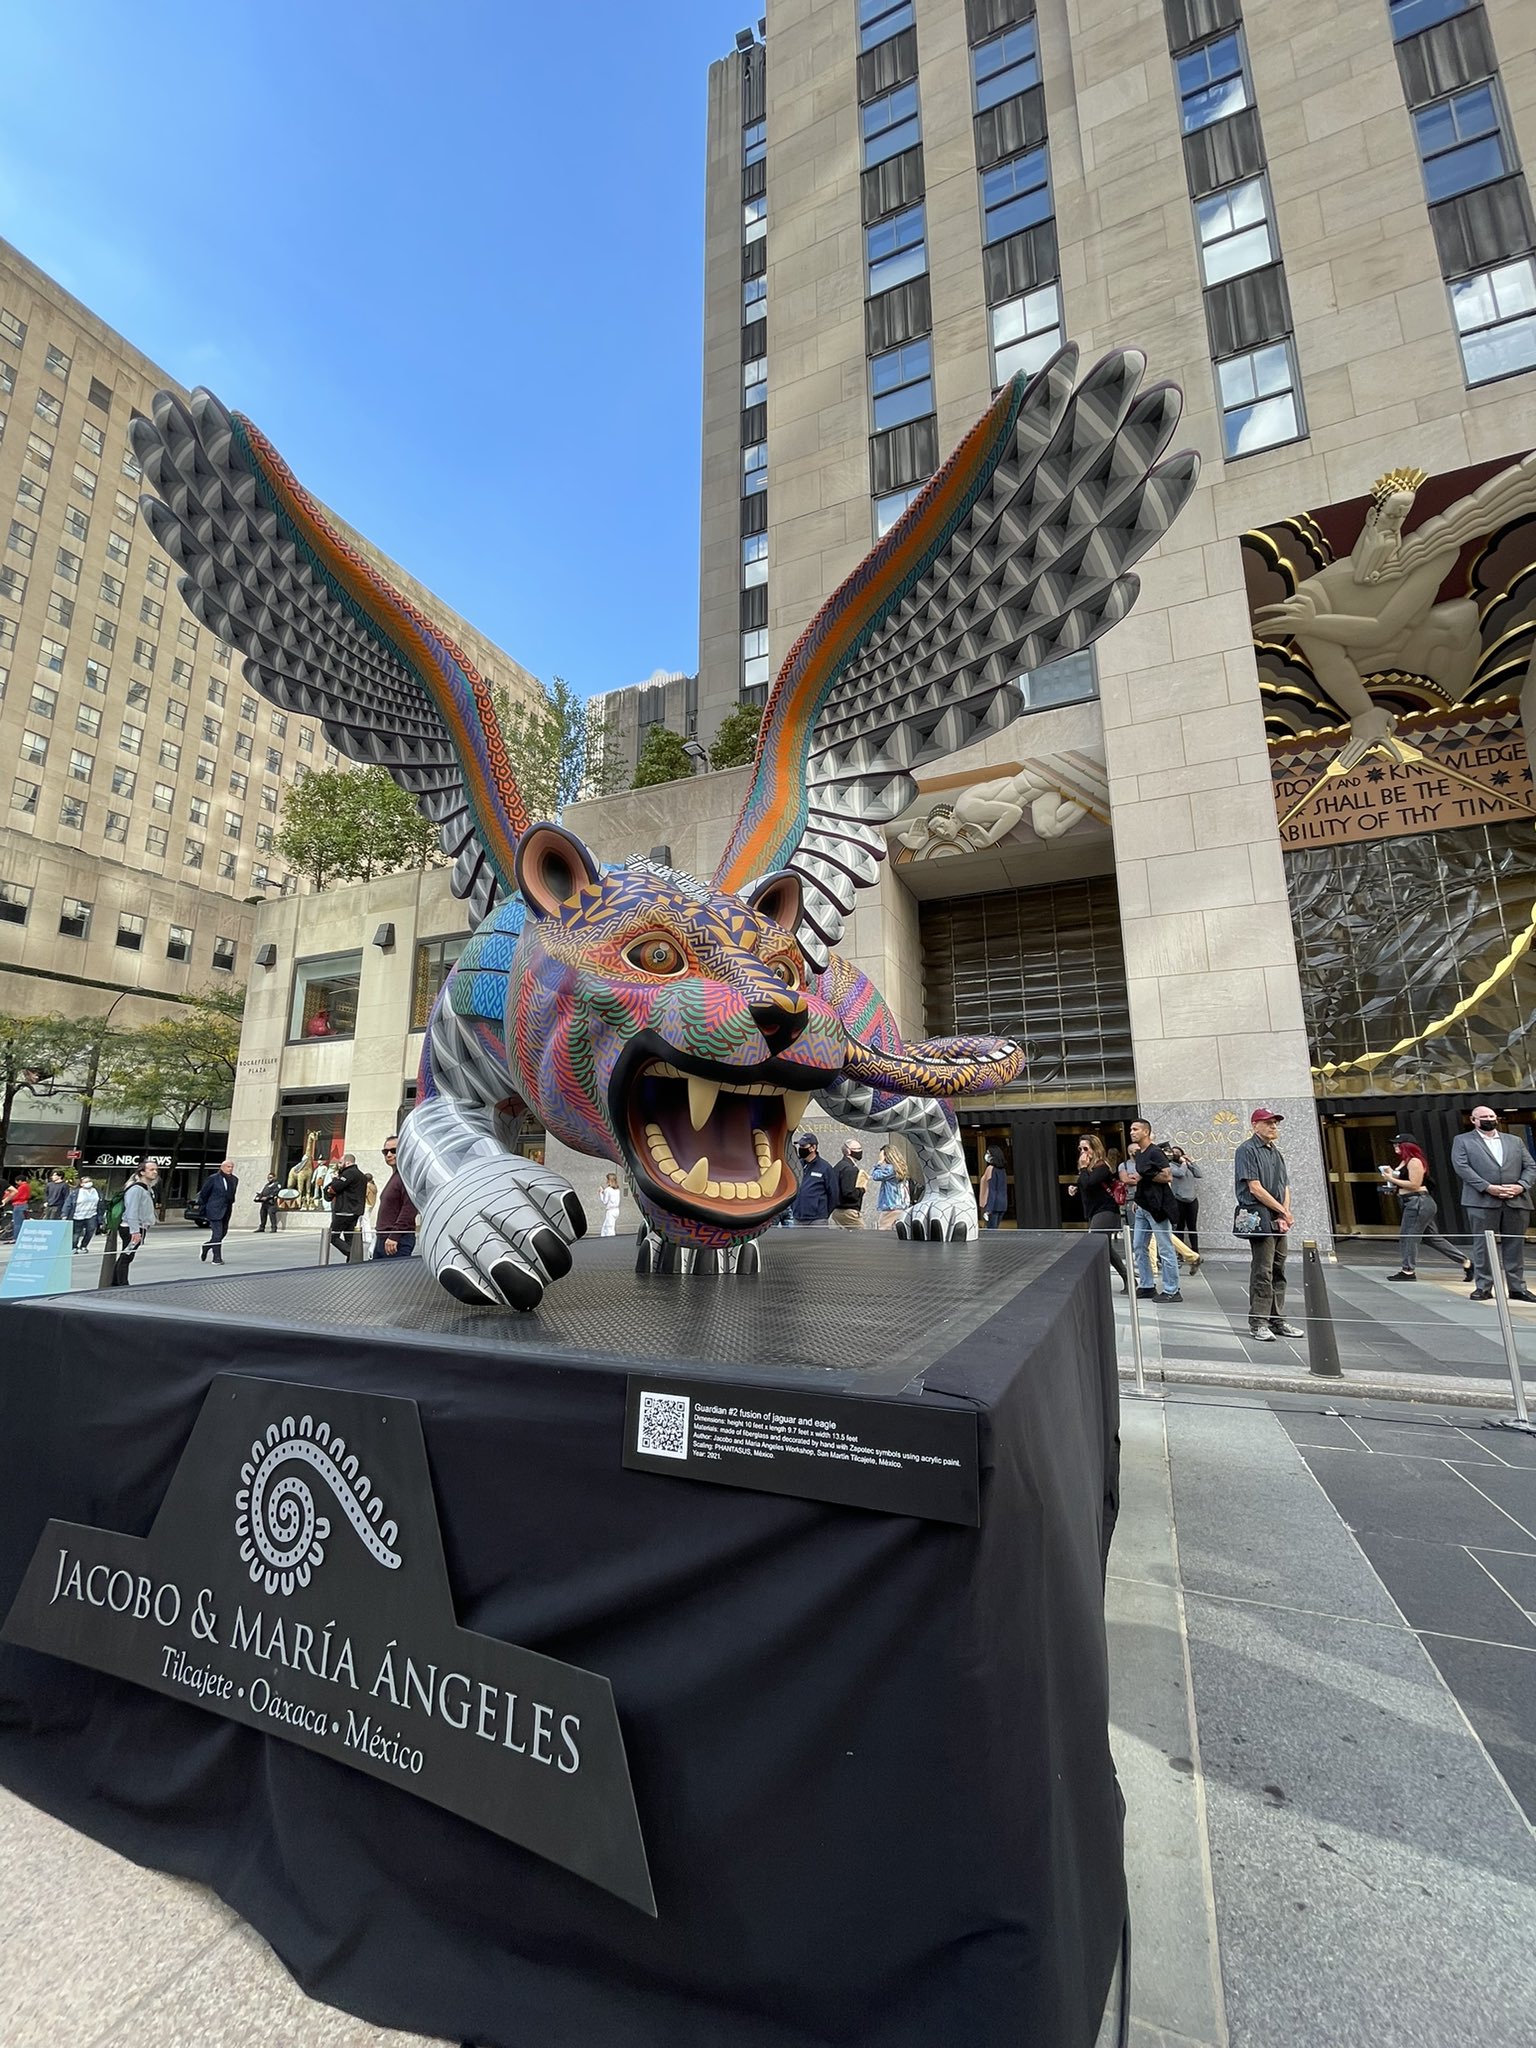 Colocan alebrijes gigantes de artesanos oaxaqueños en el Rockefeller Center de NY